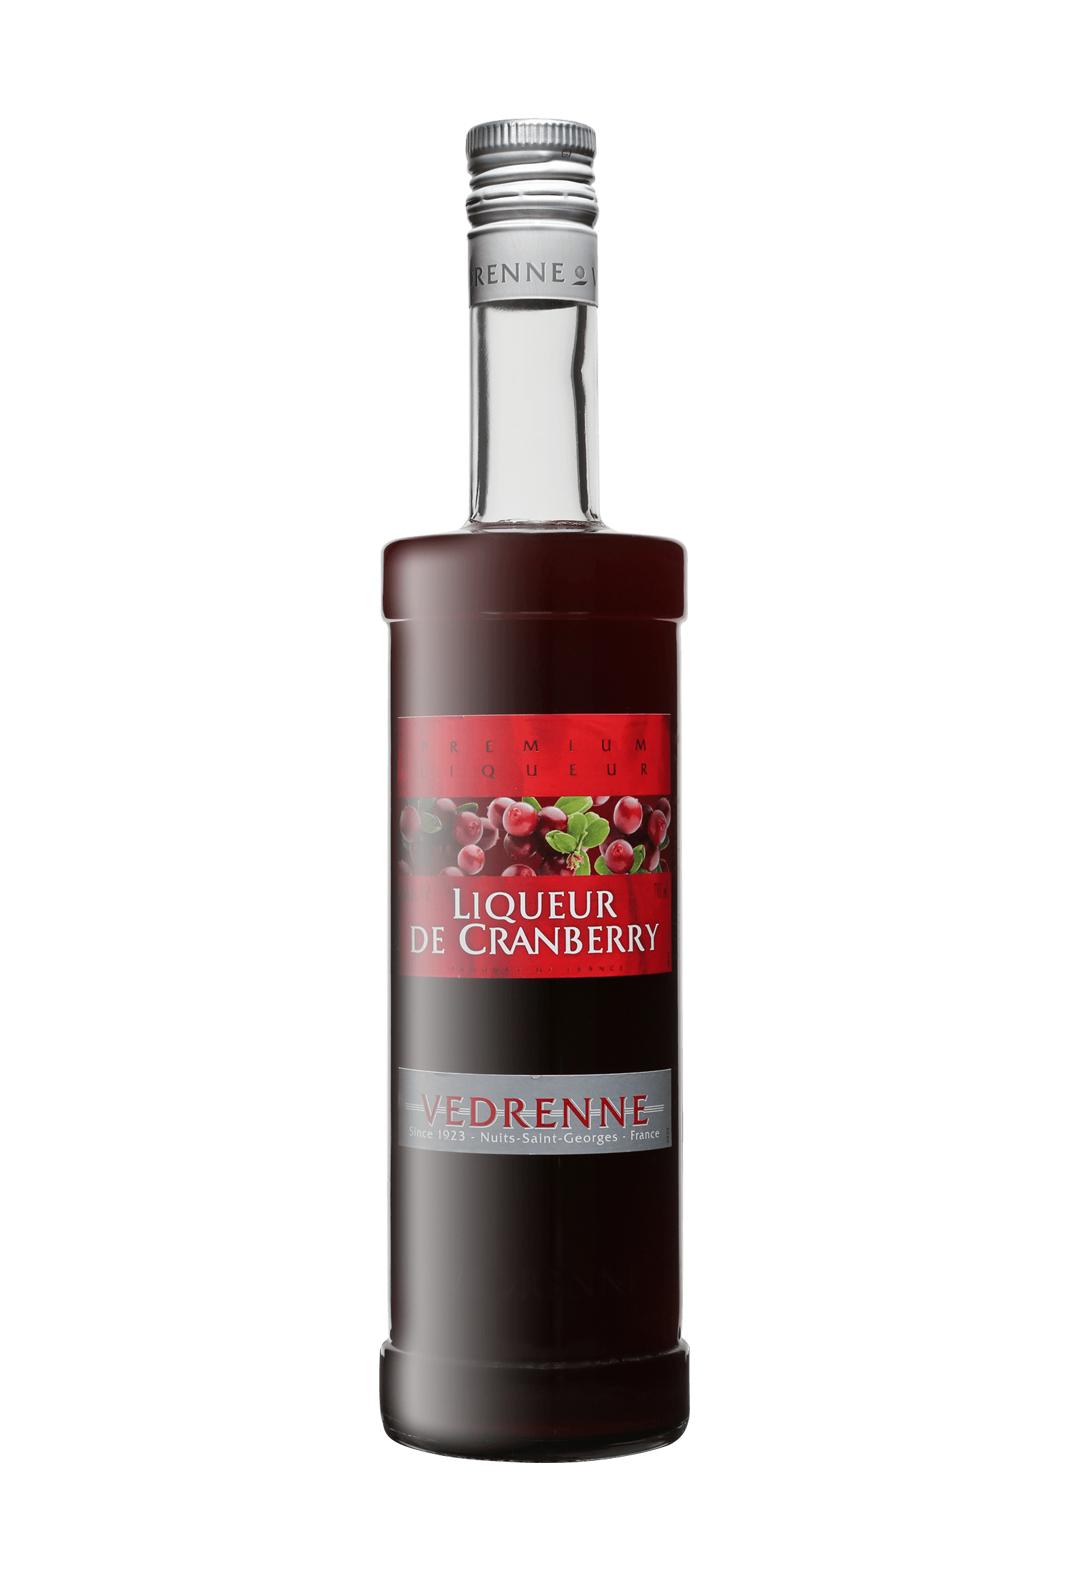 Vedrenne Liqueur de Cranberry 15% 700ml - Fruit Liqueur - Liquor Wine Cave